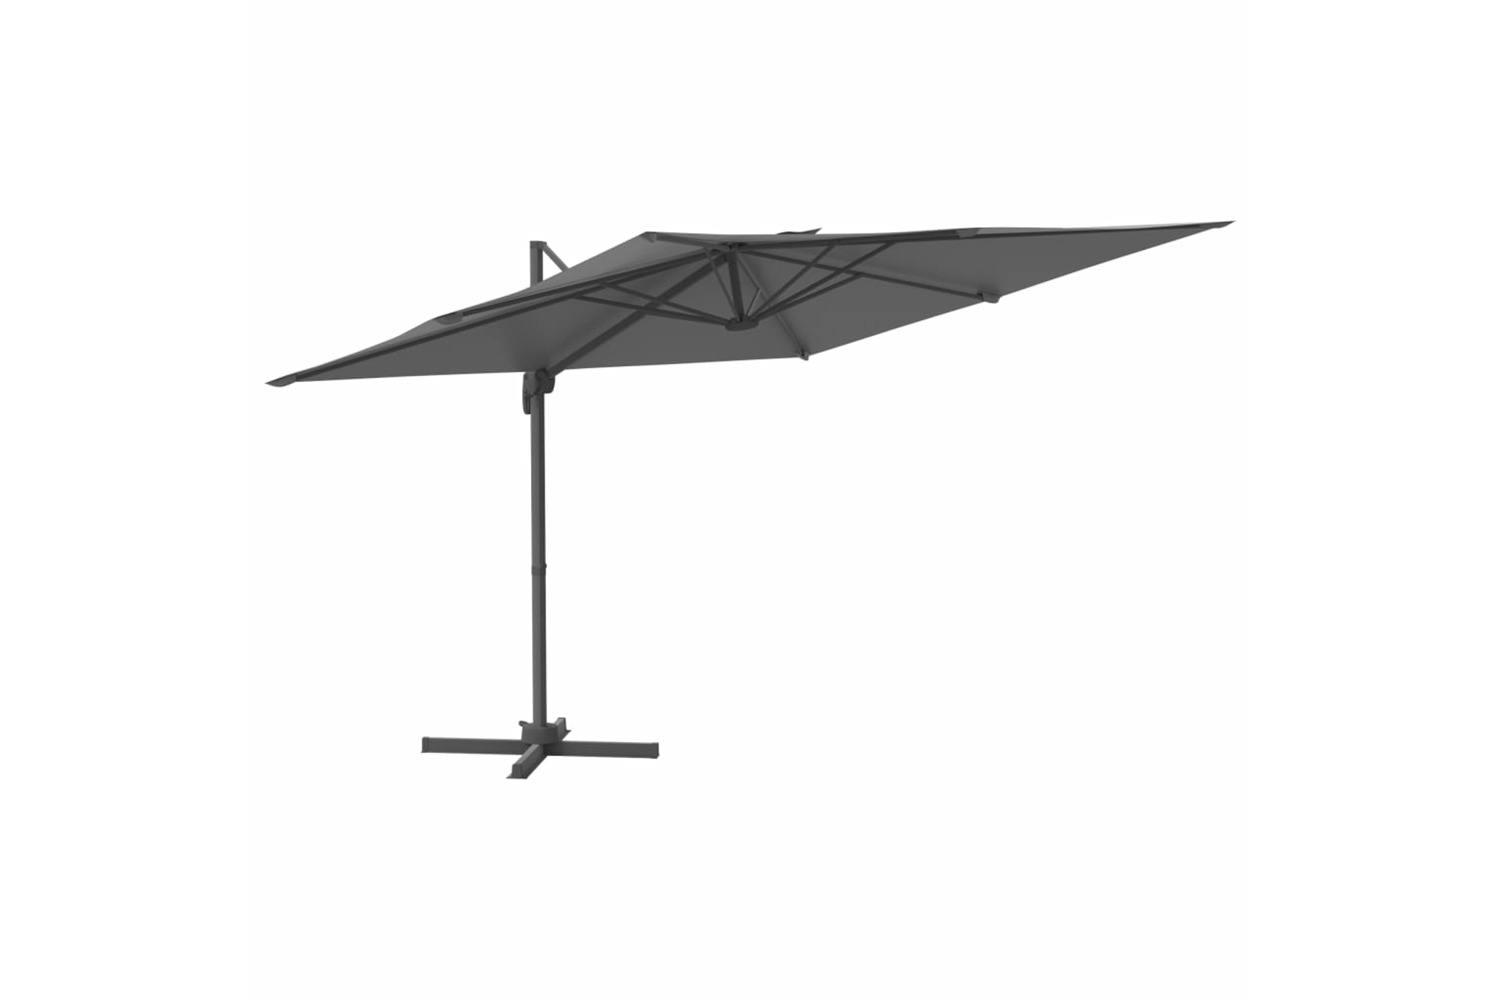 Vidaxl 319916 Cantilever Umbrella With Aluminium Pole Anthracite 400x300 Cm